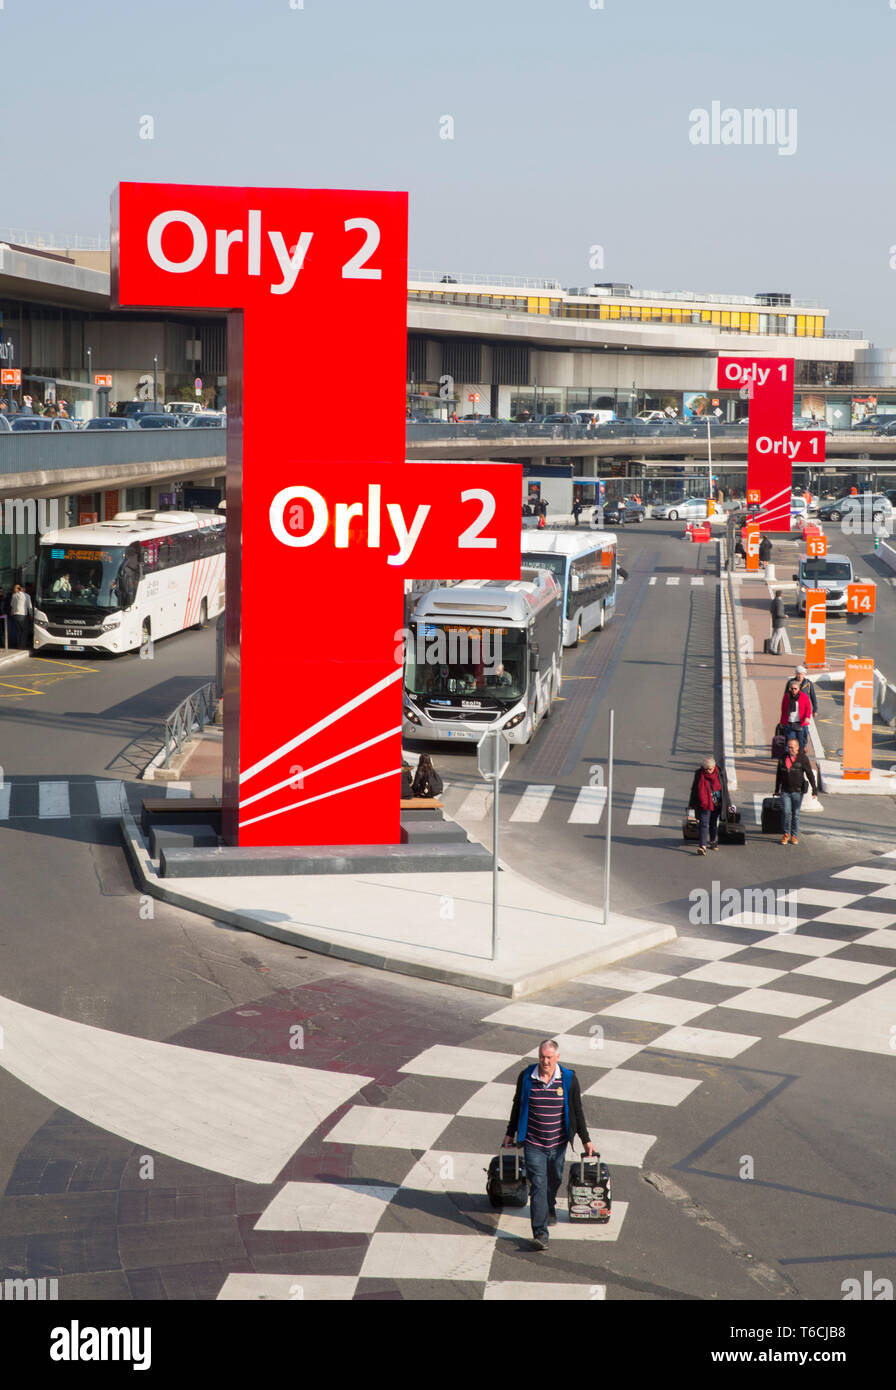 Aéroport paris orly 1 2 3 4 Banque de photographies et d'images à haute  résolution - Alamy